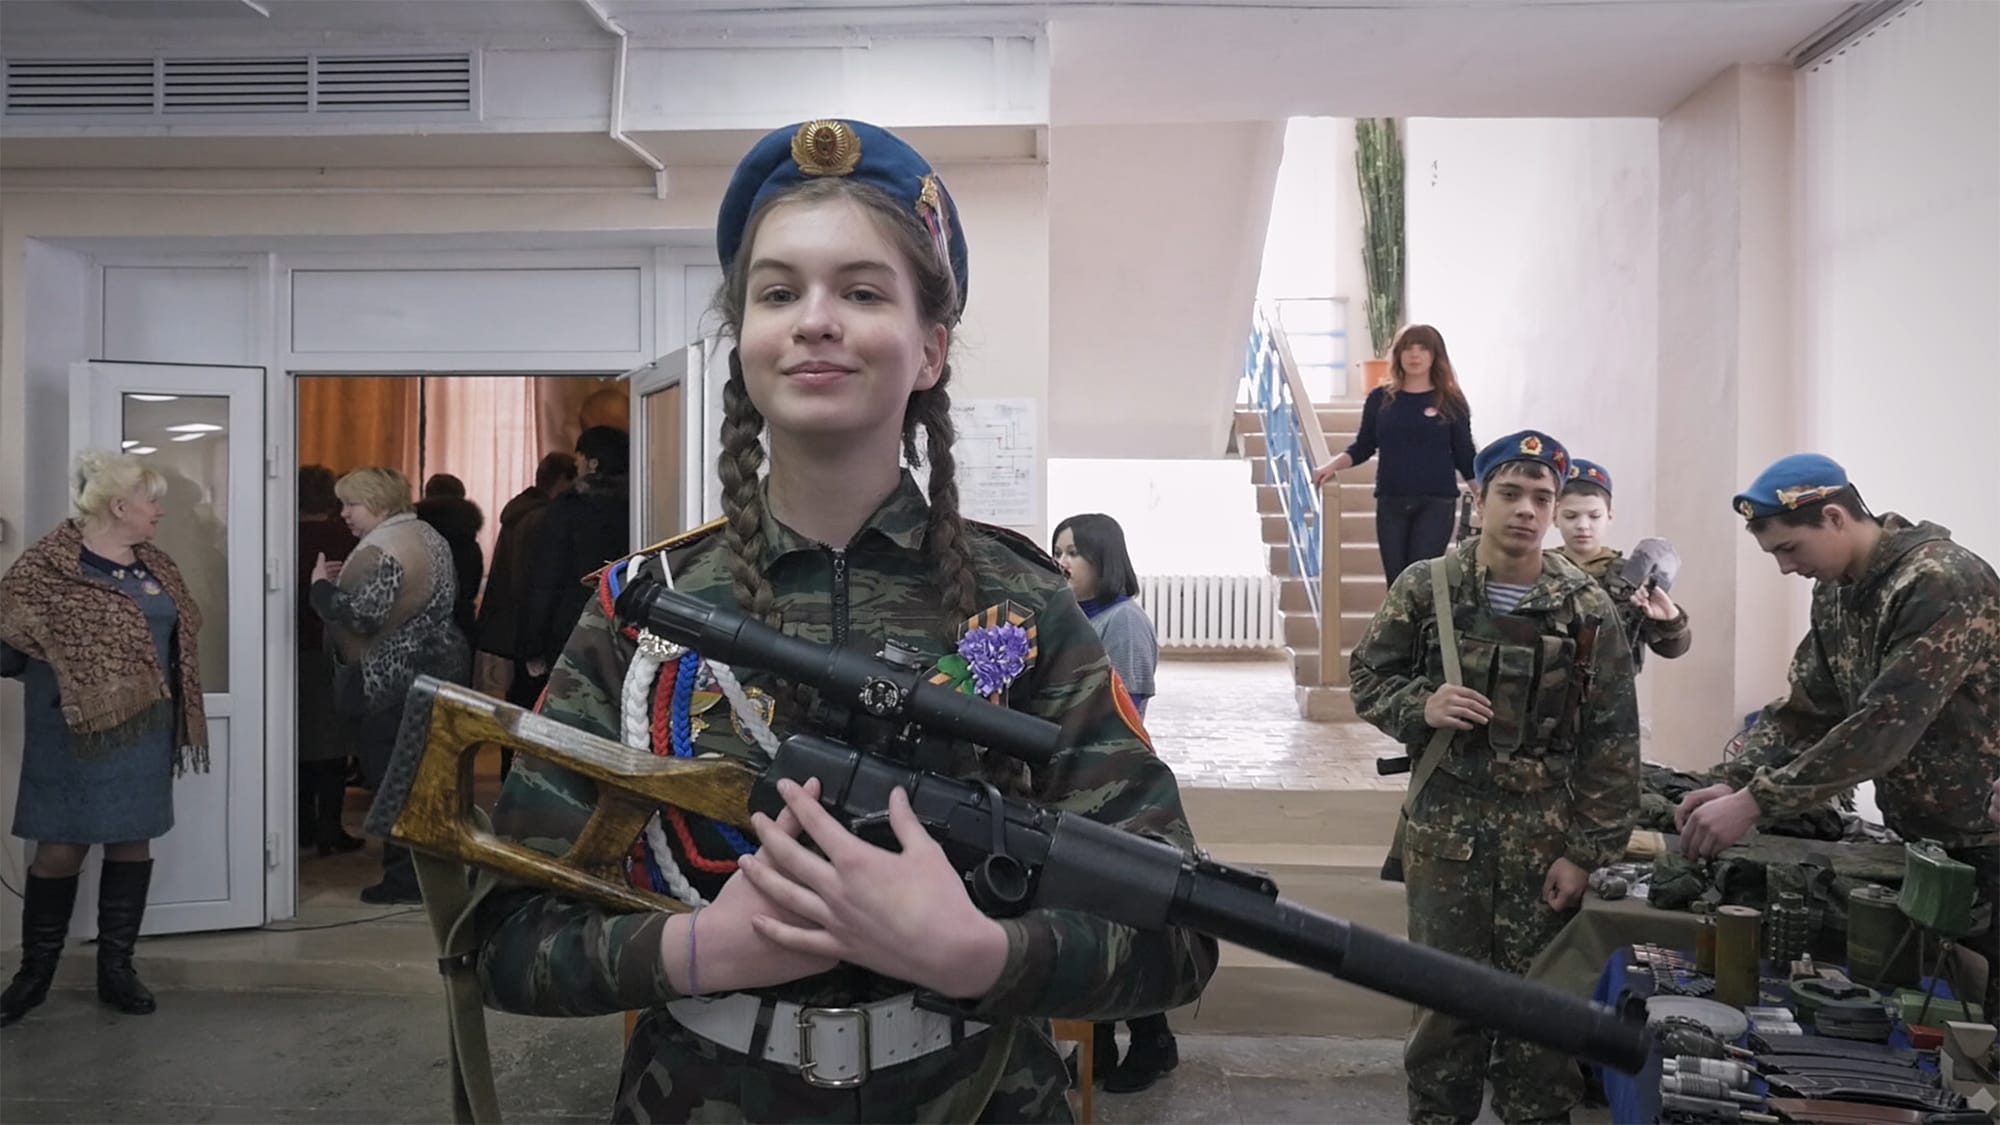 הנערה מאשה במדי צבא הנוער בעיירה ילניה, רוסיה, מתוך הסרט התיעודי "עיר תהילה" (צילום: באדיבות First Hand Films)